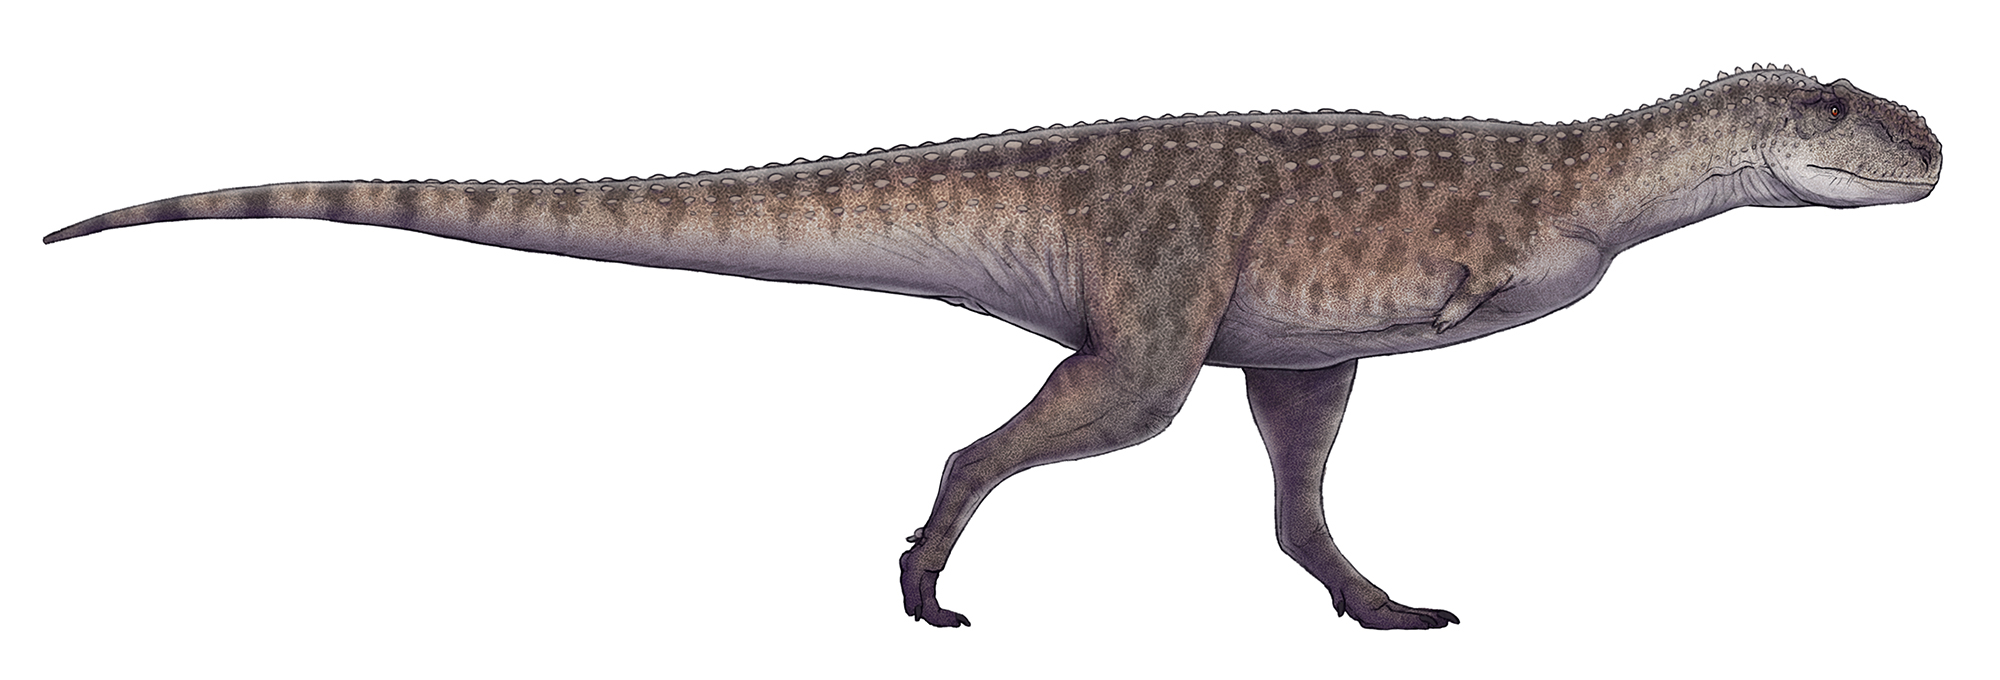 Rekonstrukce přibližného vzezření abelisaurida druhu Rajasaurus narmadensis, žijícího na území současné západní Indie v období nejpozdnější křídy, zhruba před 70 až 66 miliony let. Tento asi 6,6 metru dlouhý dravec mohl být jedním z dominantních pred